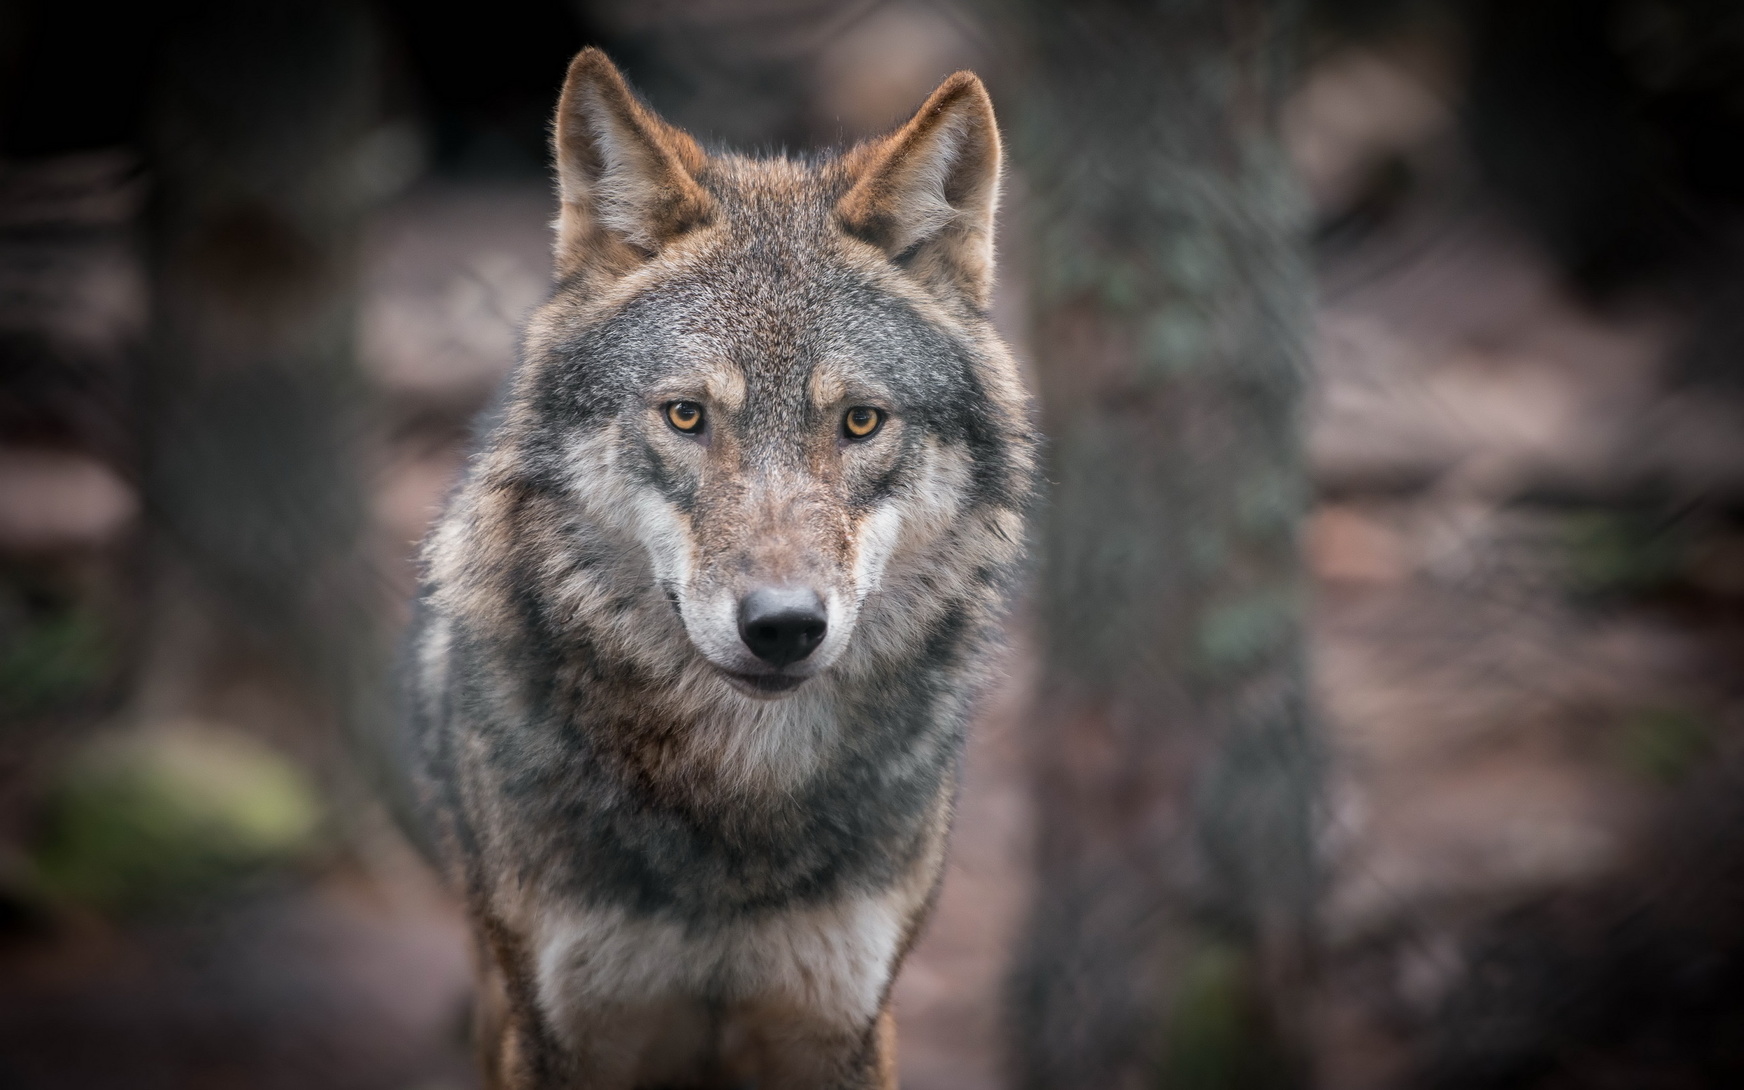 Les loups du parc à loups du Gévaudan s'ébattent sur 20 hectares, dont 7 sont ouverts aux visiteurs. © Vjaceslavs, fotolia